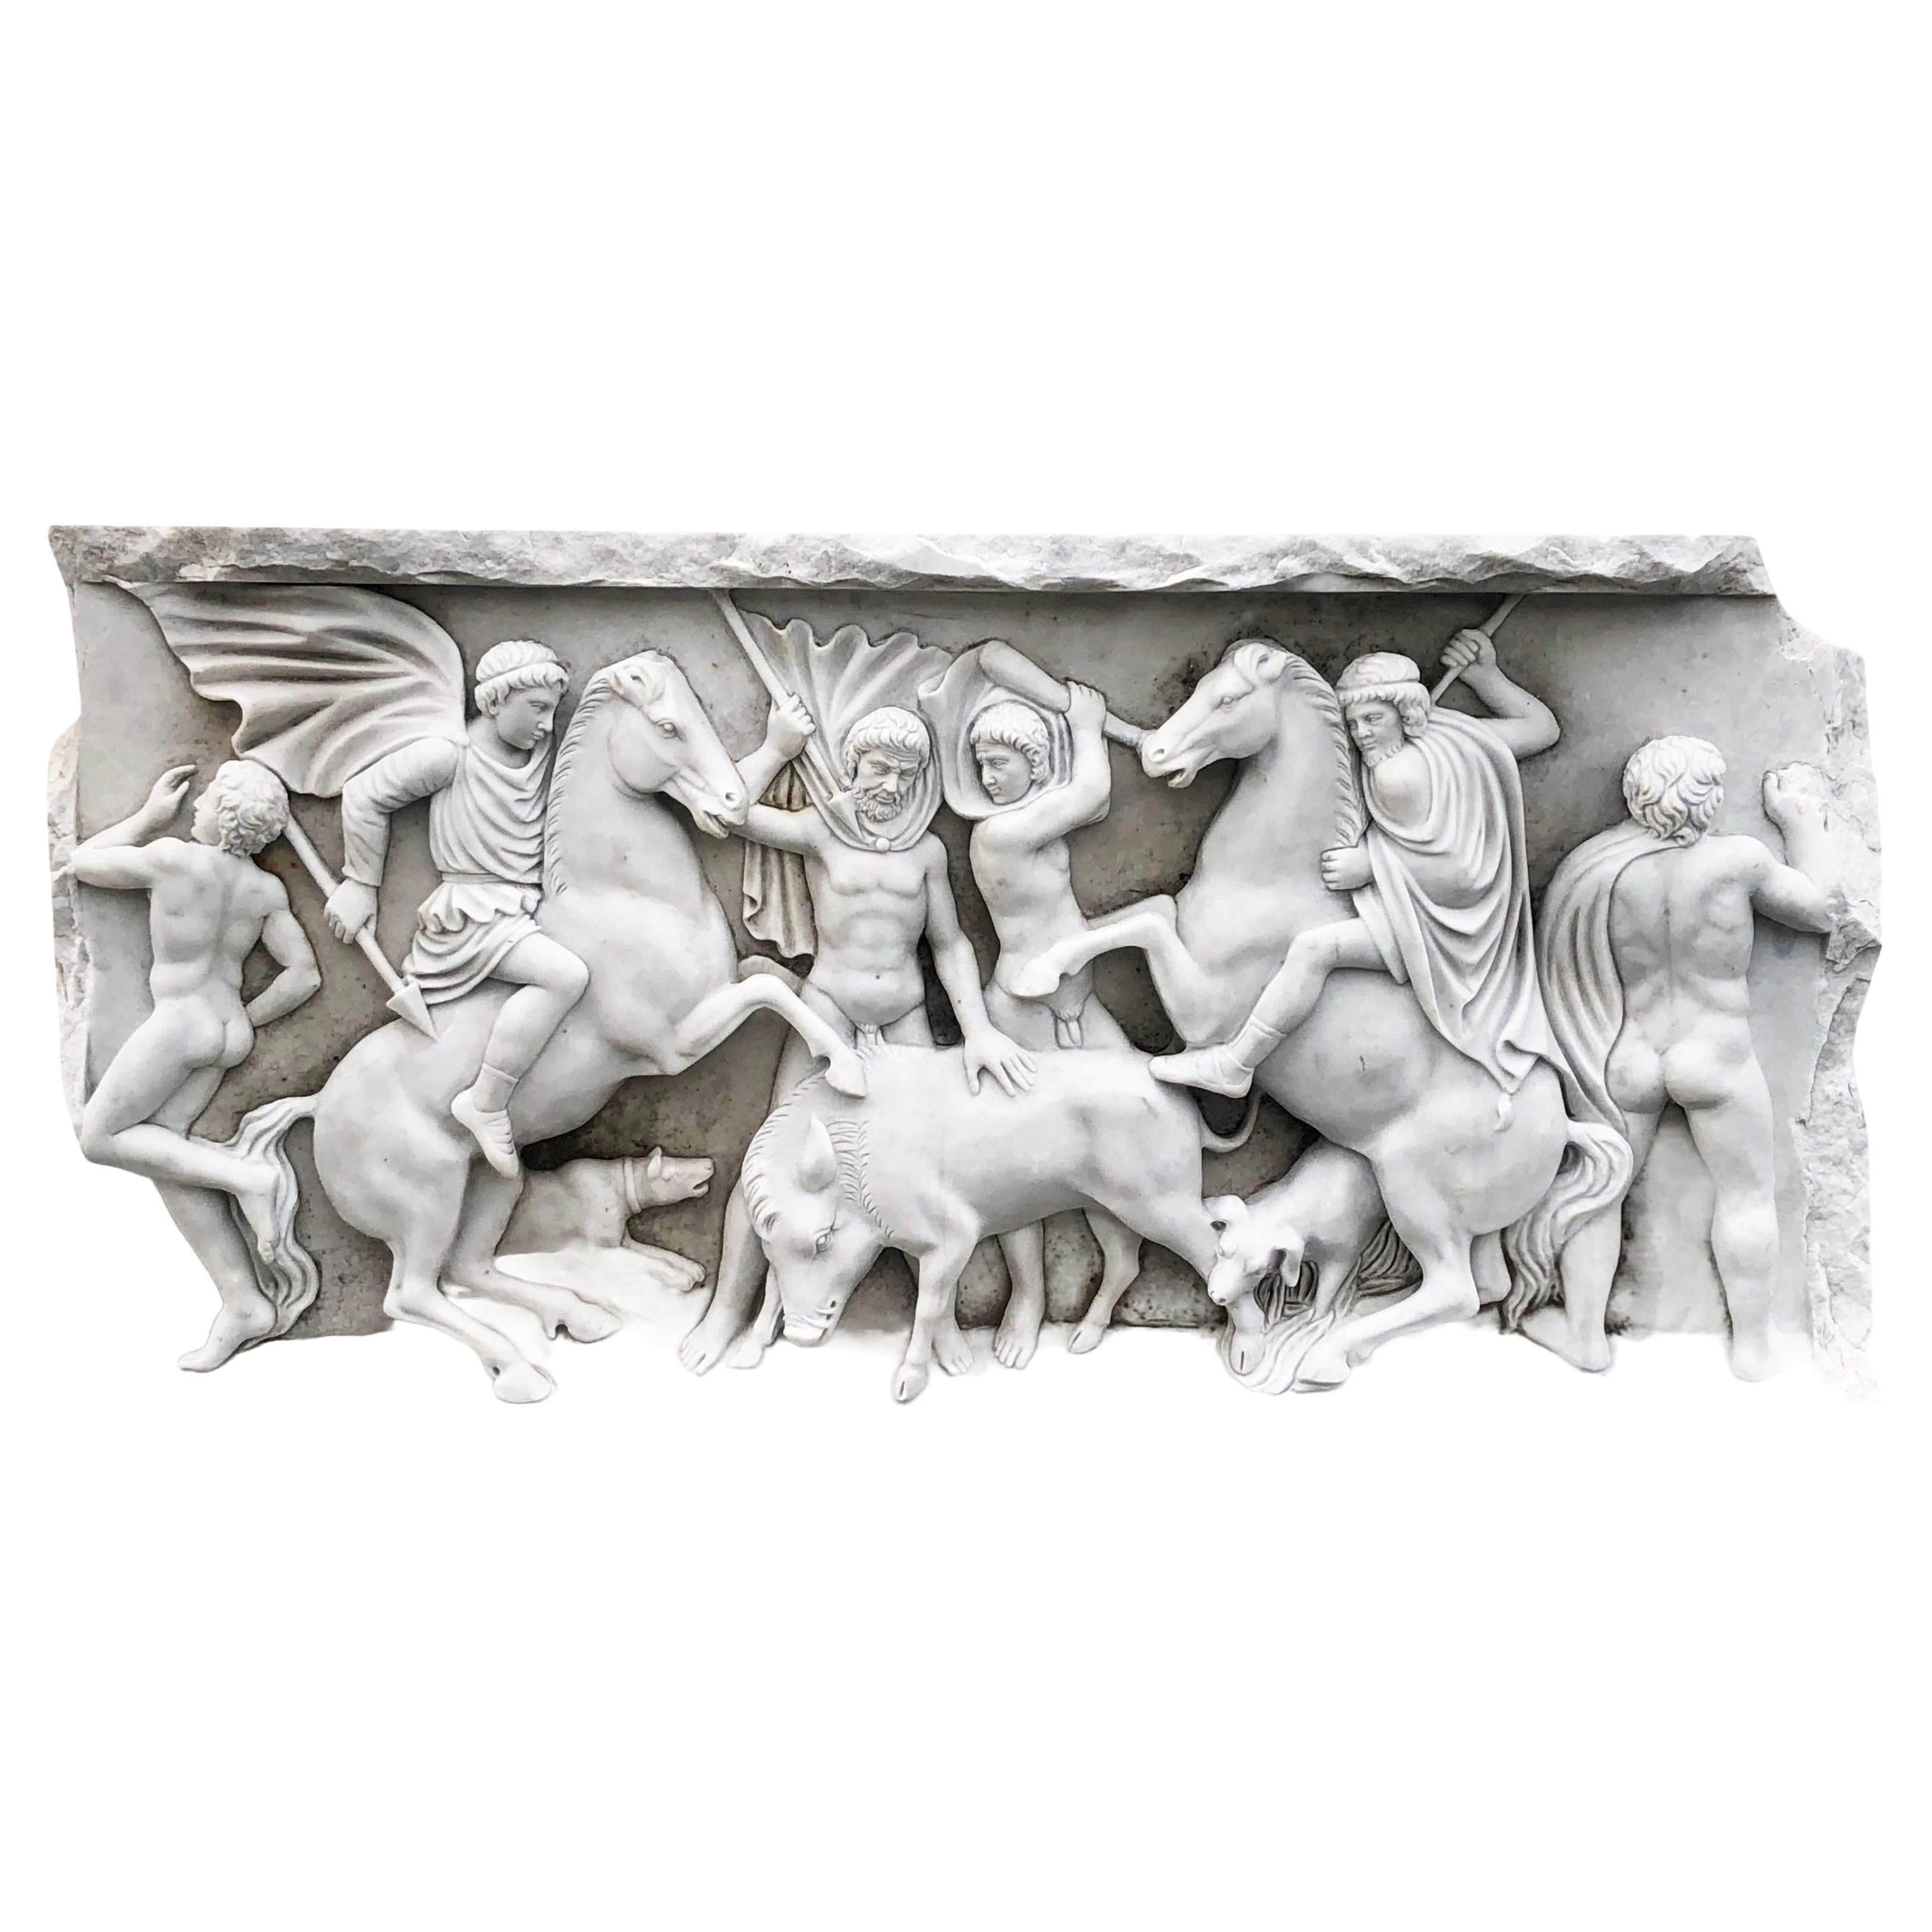 19th Century British Carrara Marble Roman Relief Sculpture - Antique Relief For Sale